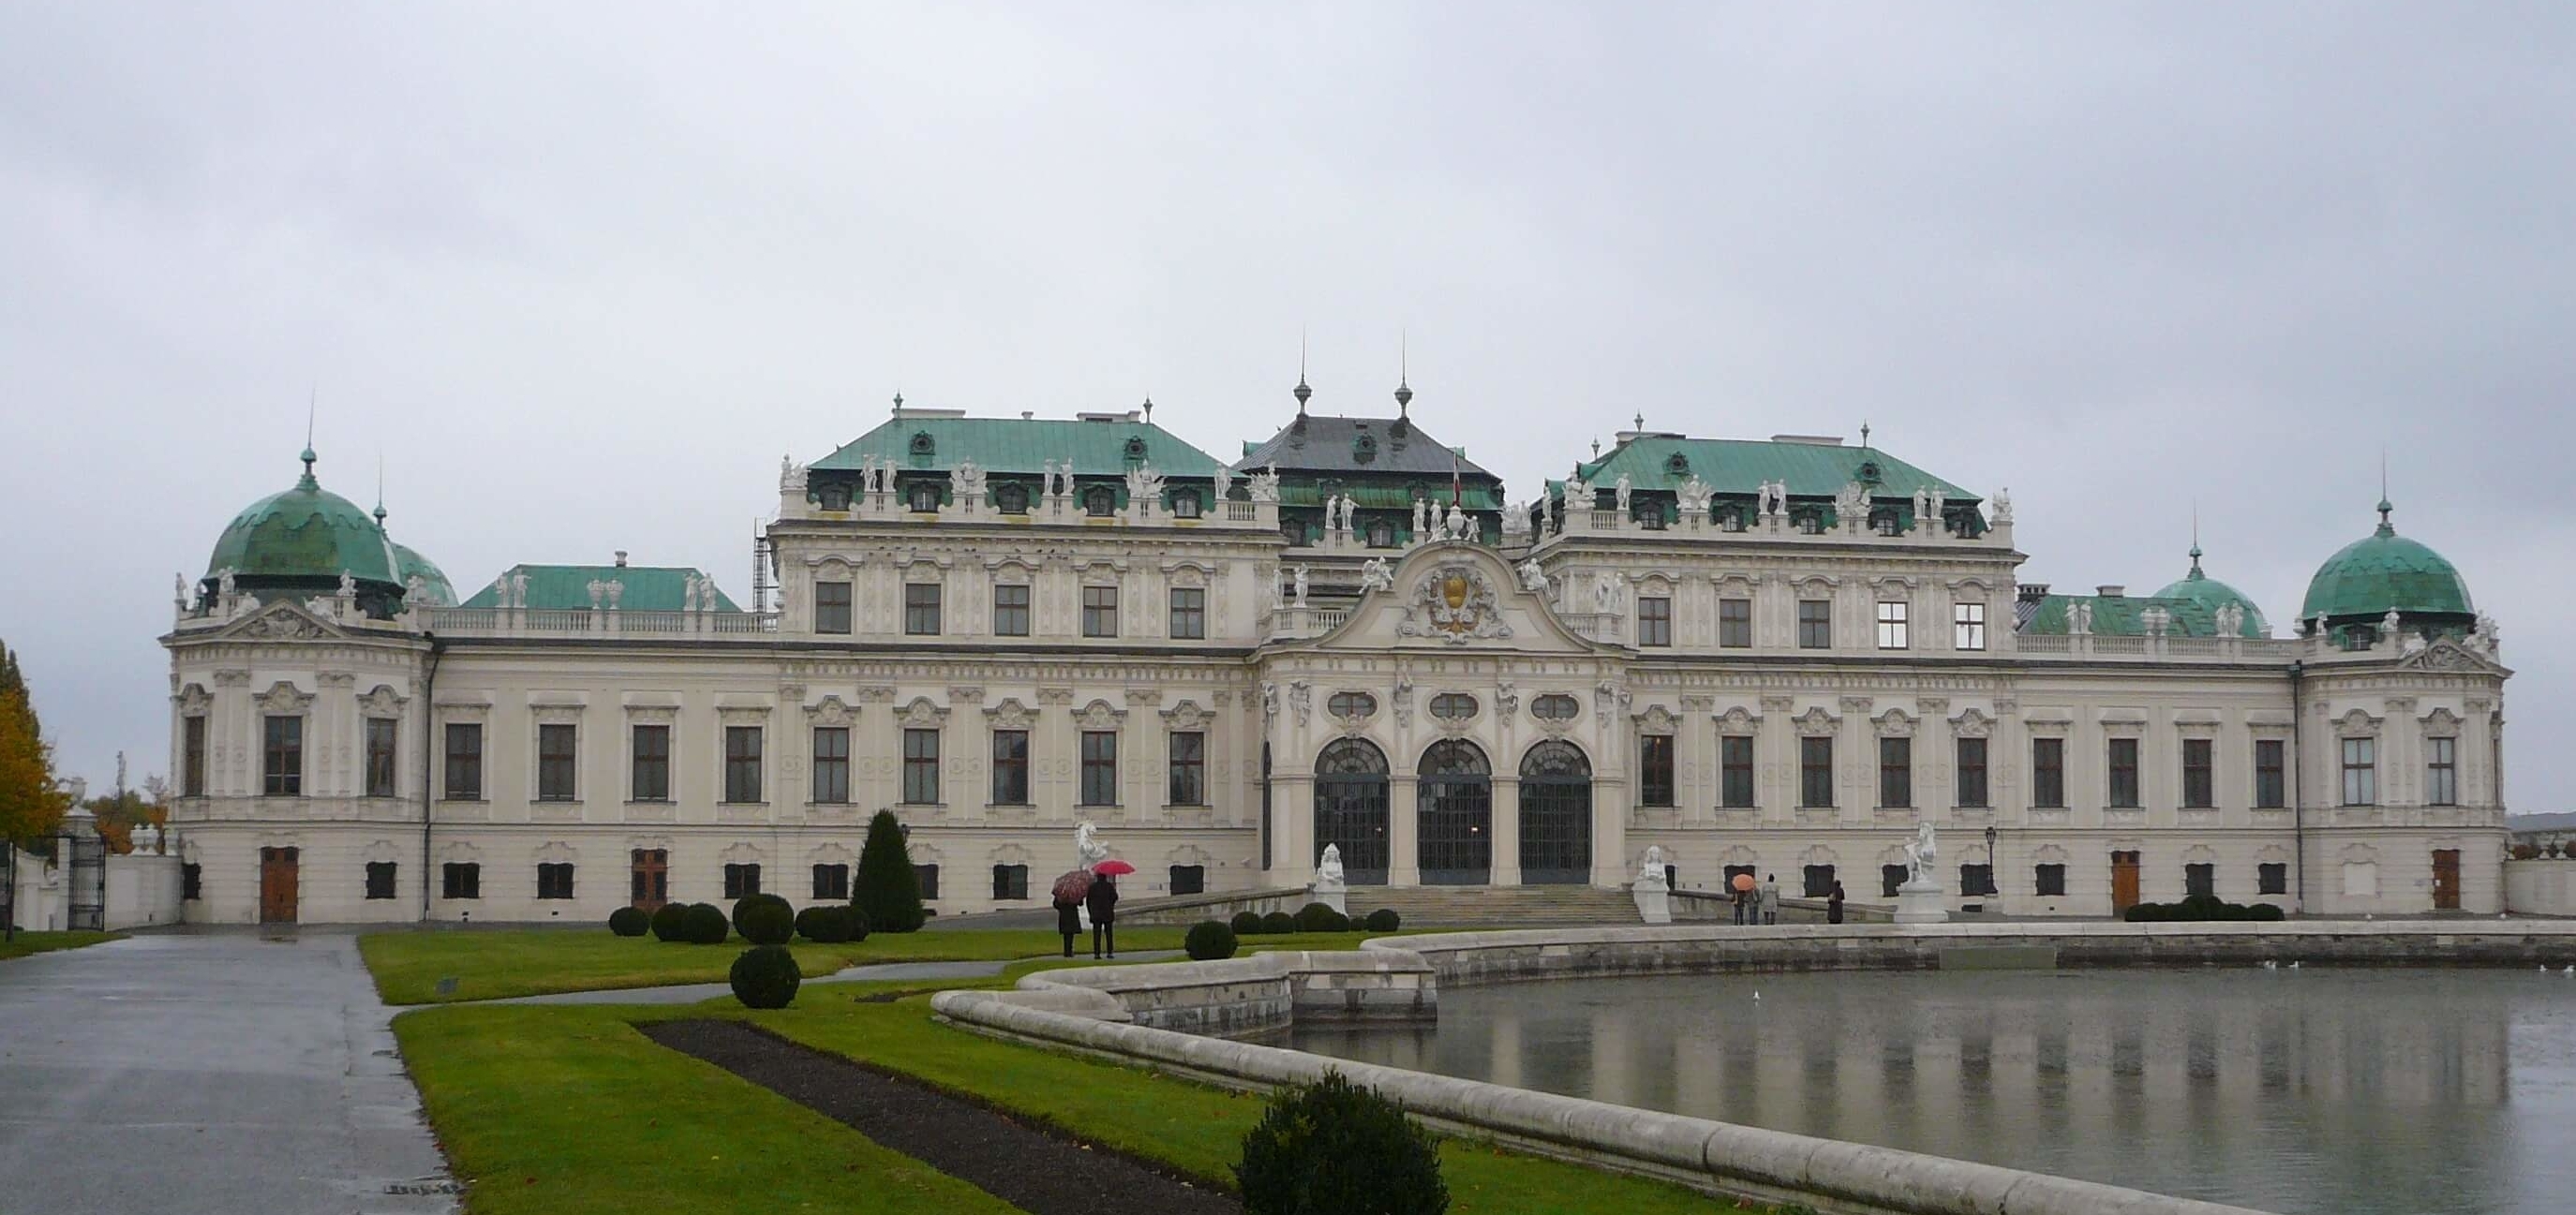 バロック様式のベルヴェデーレ宮殿